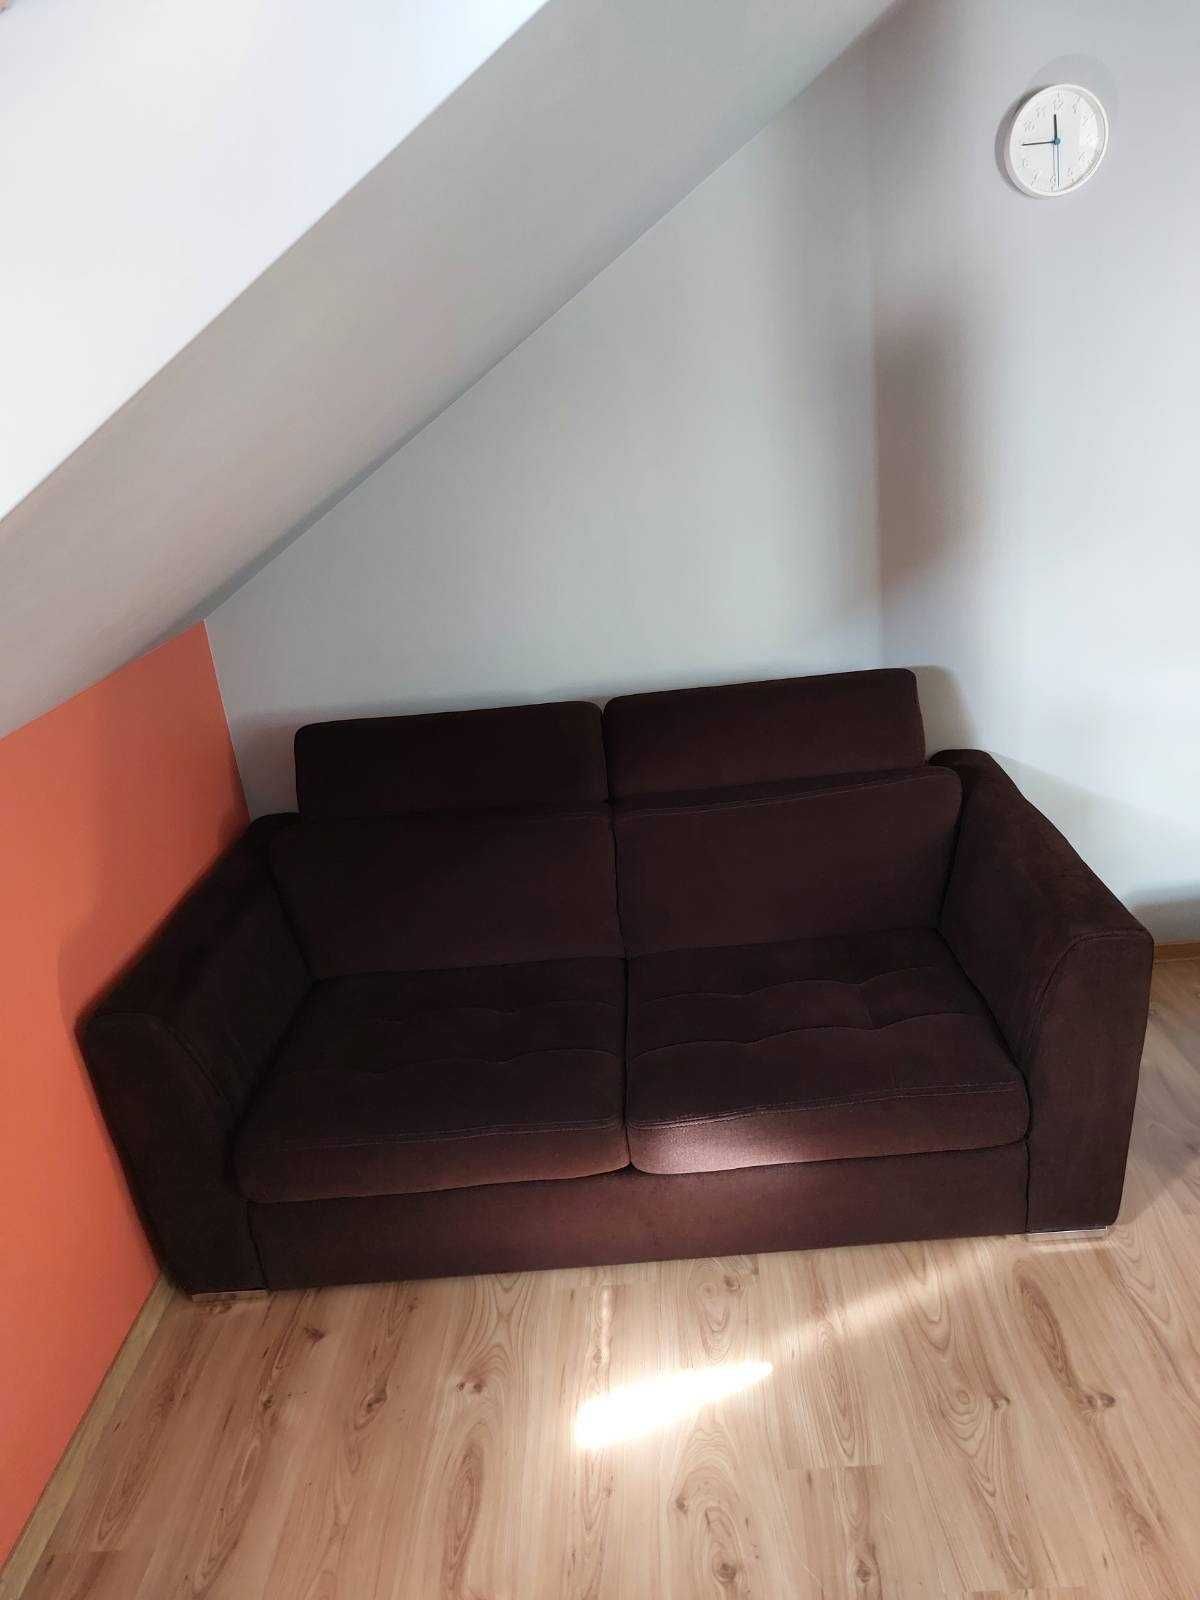 Sofa rozkładana 2-osobowa Bydgoskie meble w bardzo dobrym stanie